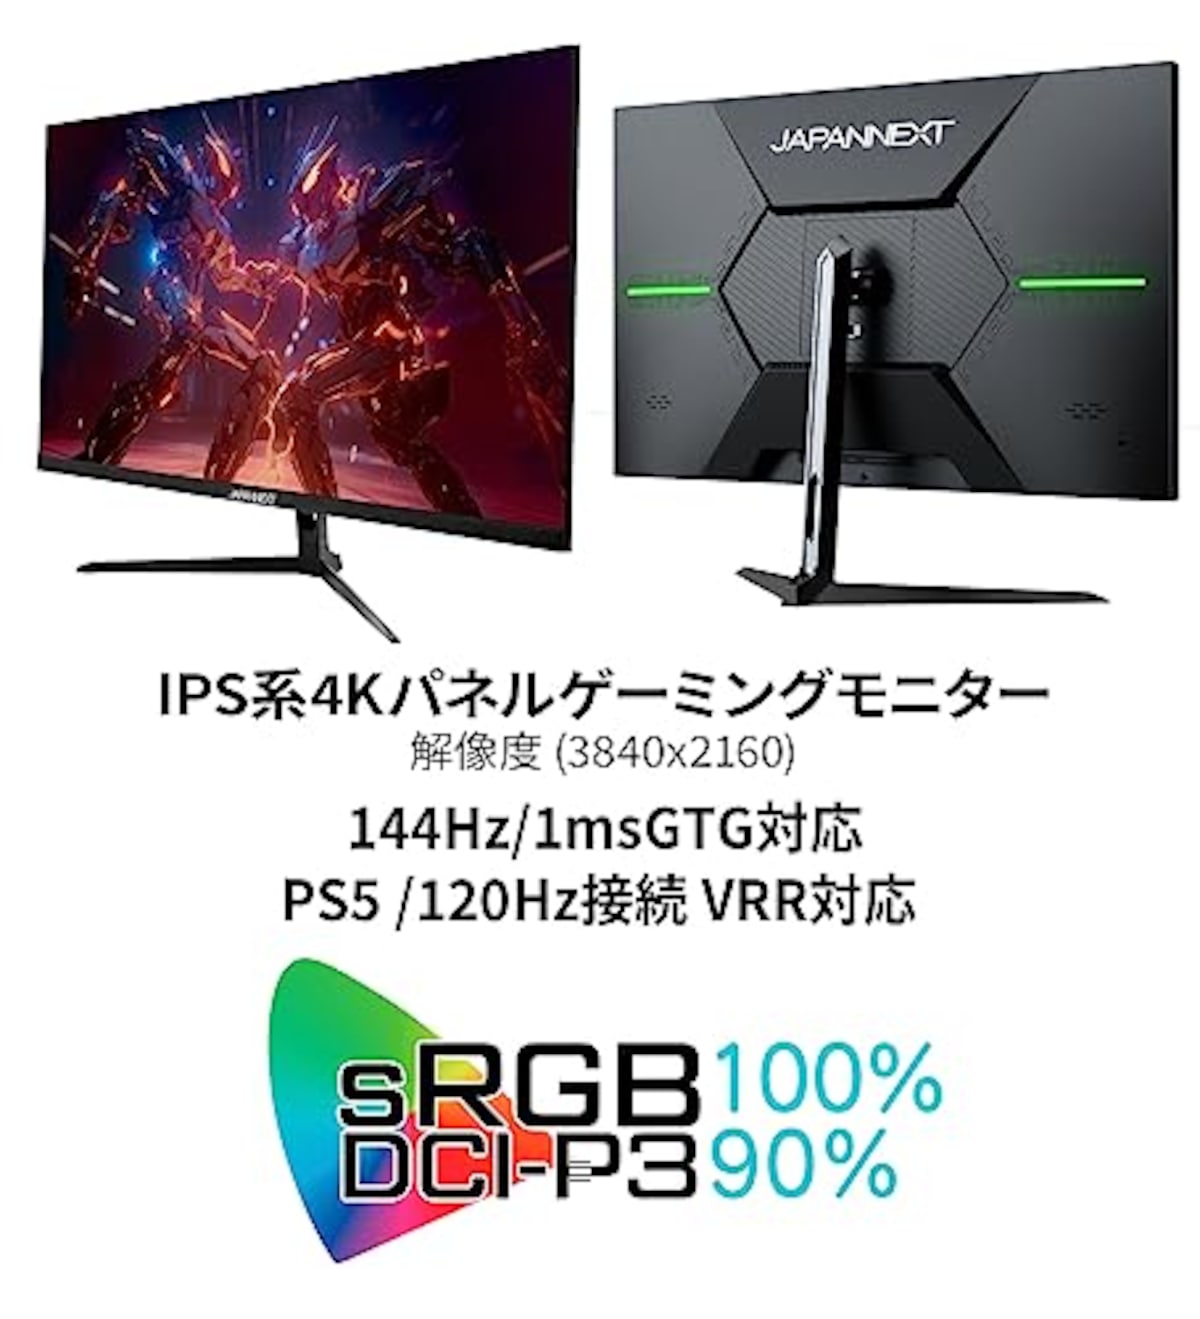  JAPANNEXT 28インチ 4K(3840x2160)解像度 144Hzリフレッシュレート対応 4Kゲーミングモニター JN-IPS28G144UHDR HDMI DP PBP/PIP対応 sRGB 100% DCI-P3 90% VRR対応画像3 